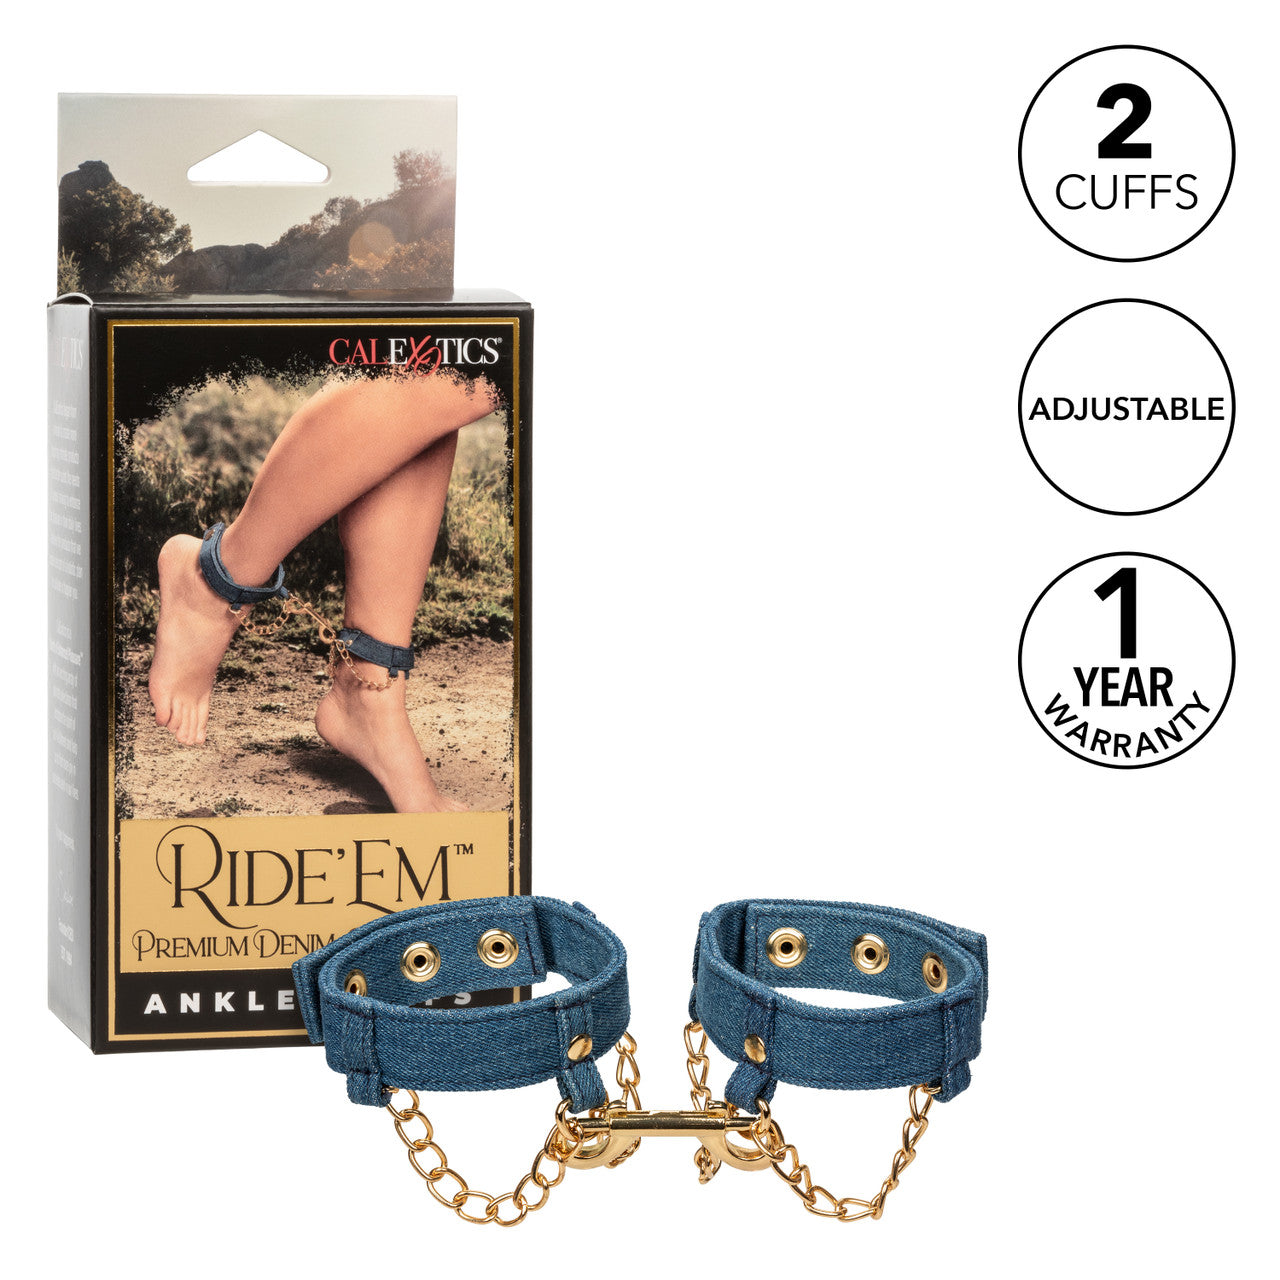 Ride 'Em Premium Denim Collection Ankle Cuffs